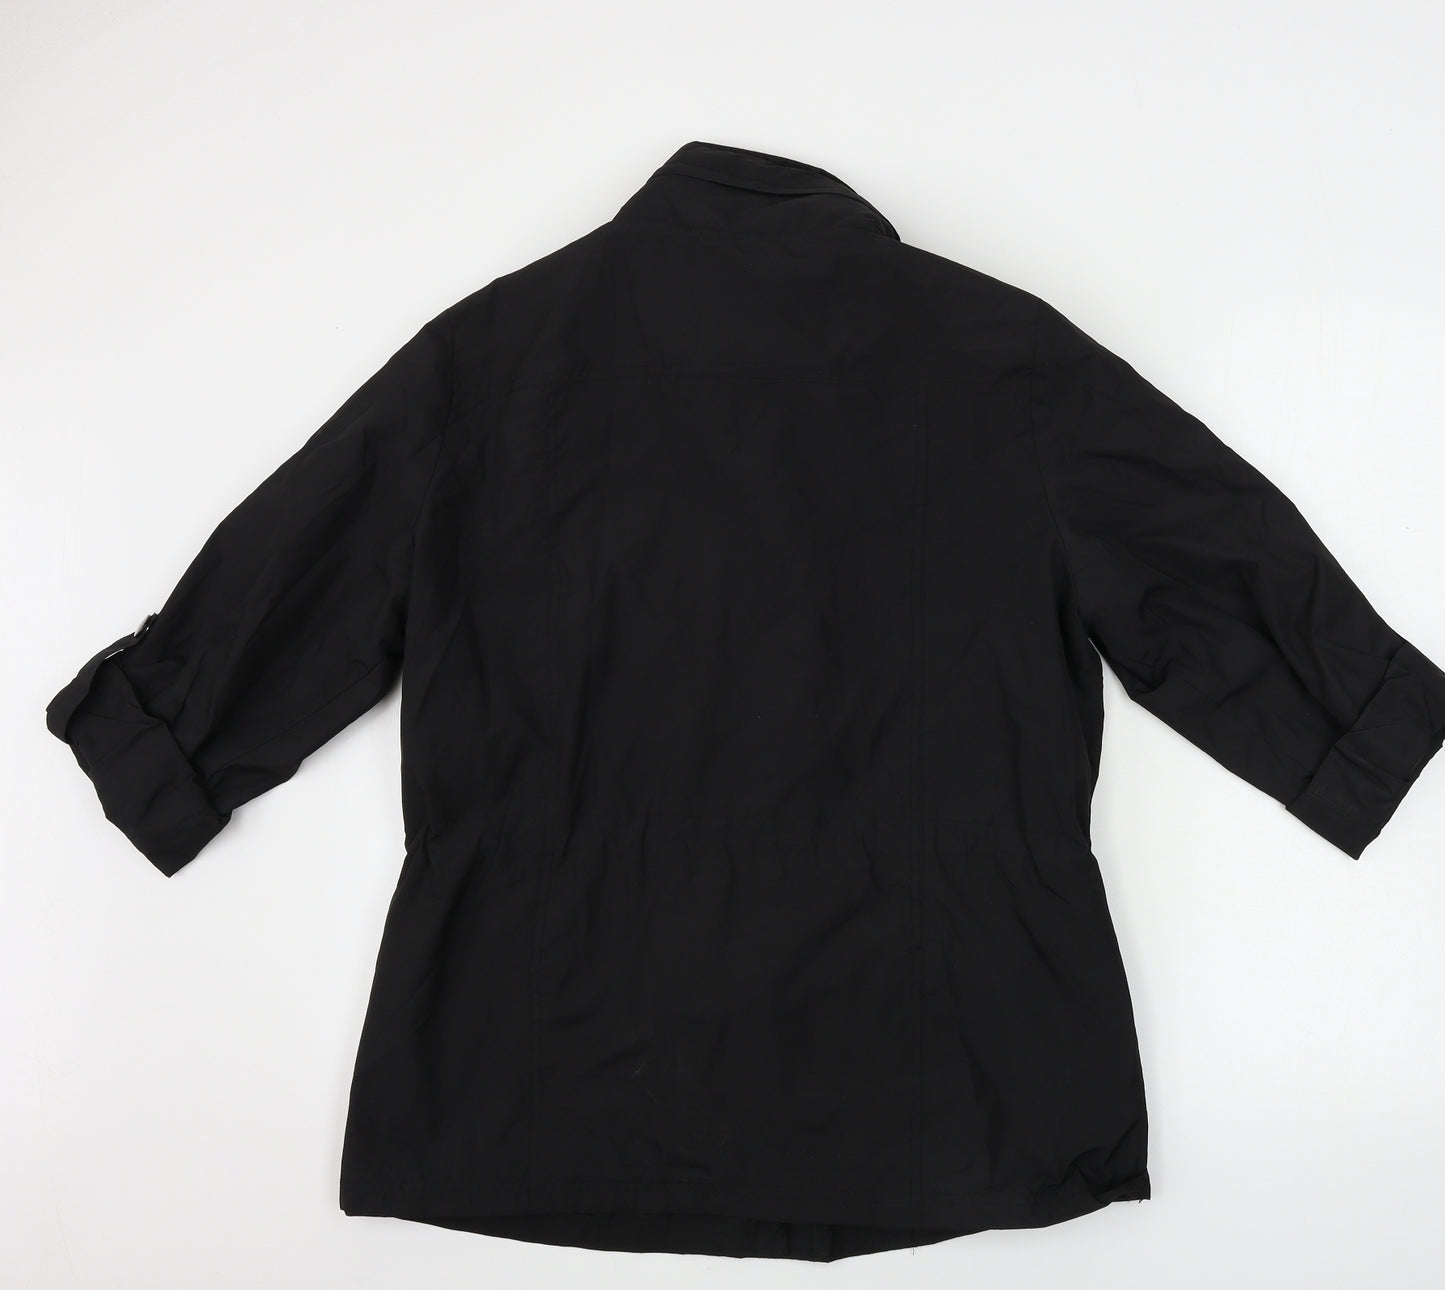 Style&co. Womens Black   Jacket Coat Size M